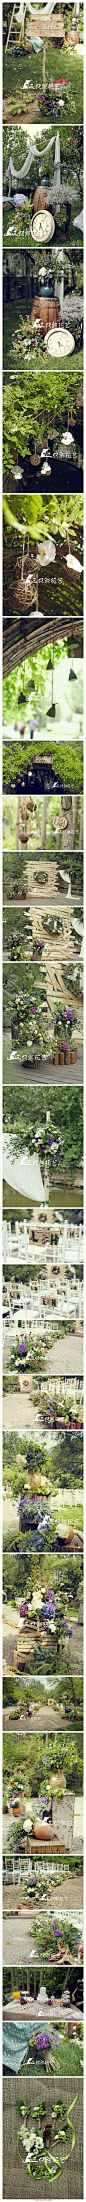 【紫色森系主题婚礼 梦想中的安静花园】郁郁葱葱的林间，一场精心布置的森系婚礼。木桩、陶罐、花器，枝枝蔓蔓的花草，构成了梦想中安静的花园。蓝紫色的绣球花，一团团在视野中，是这个夏天最热情的祝福。感谢@三只熊花艺-沁园恒硕 的分享http://t.cn/RPg5Re0